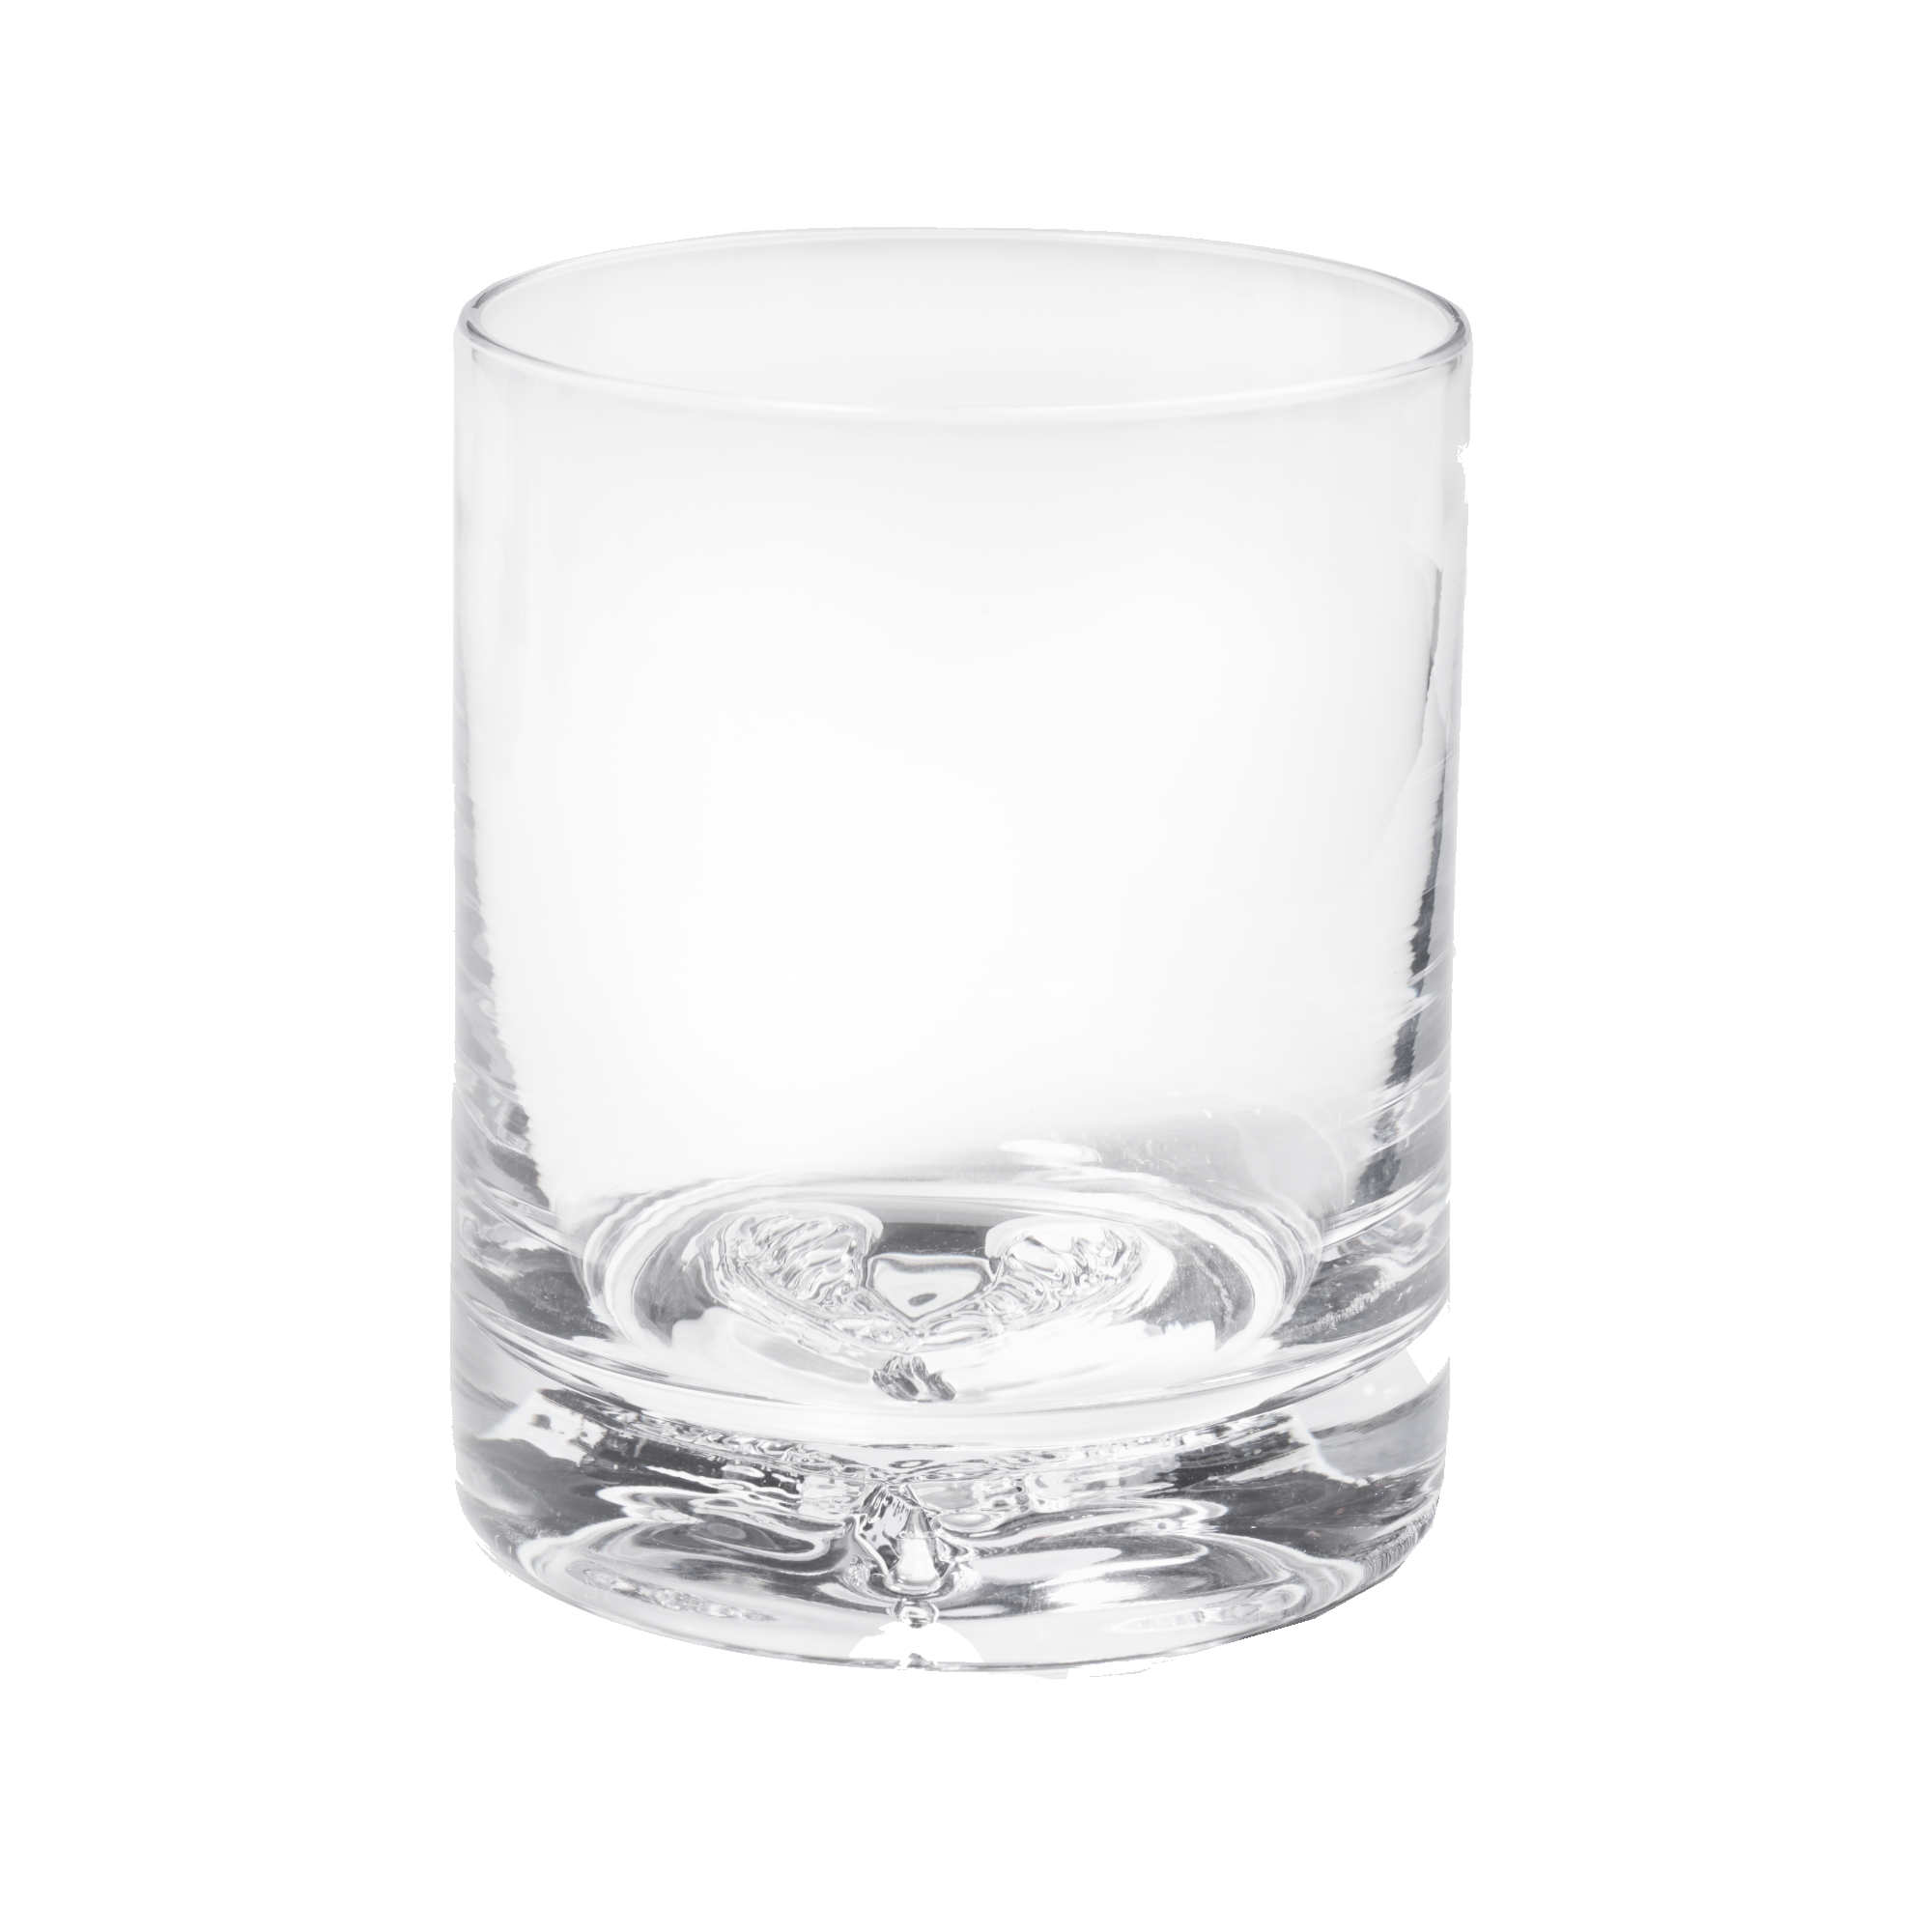 Handblown Pint Glass — AO Glass